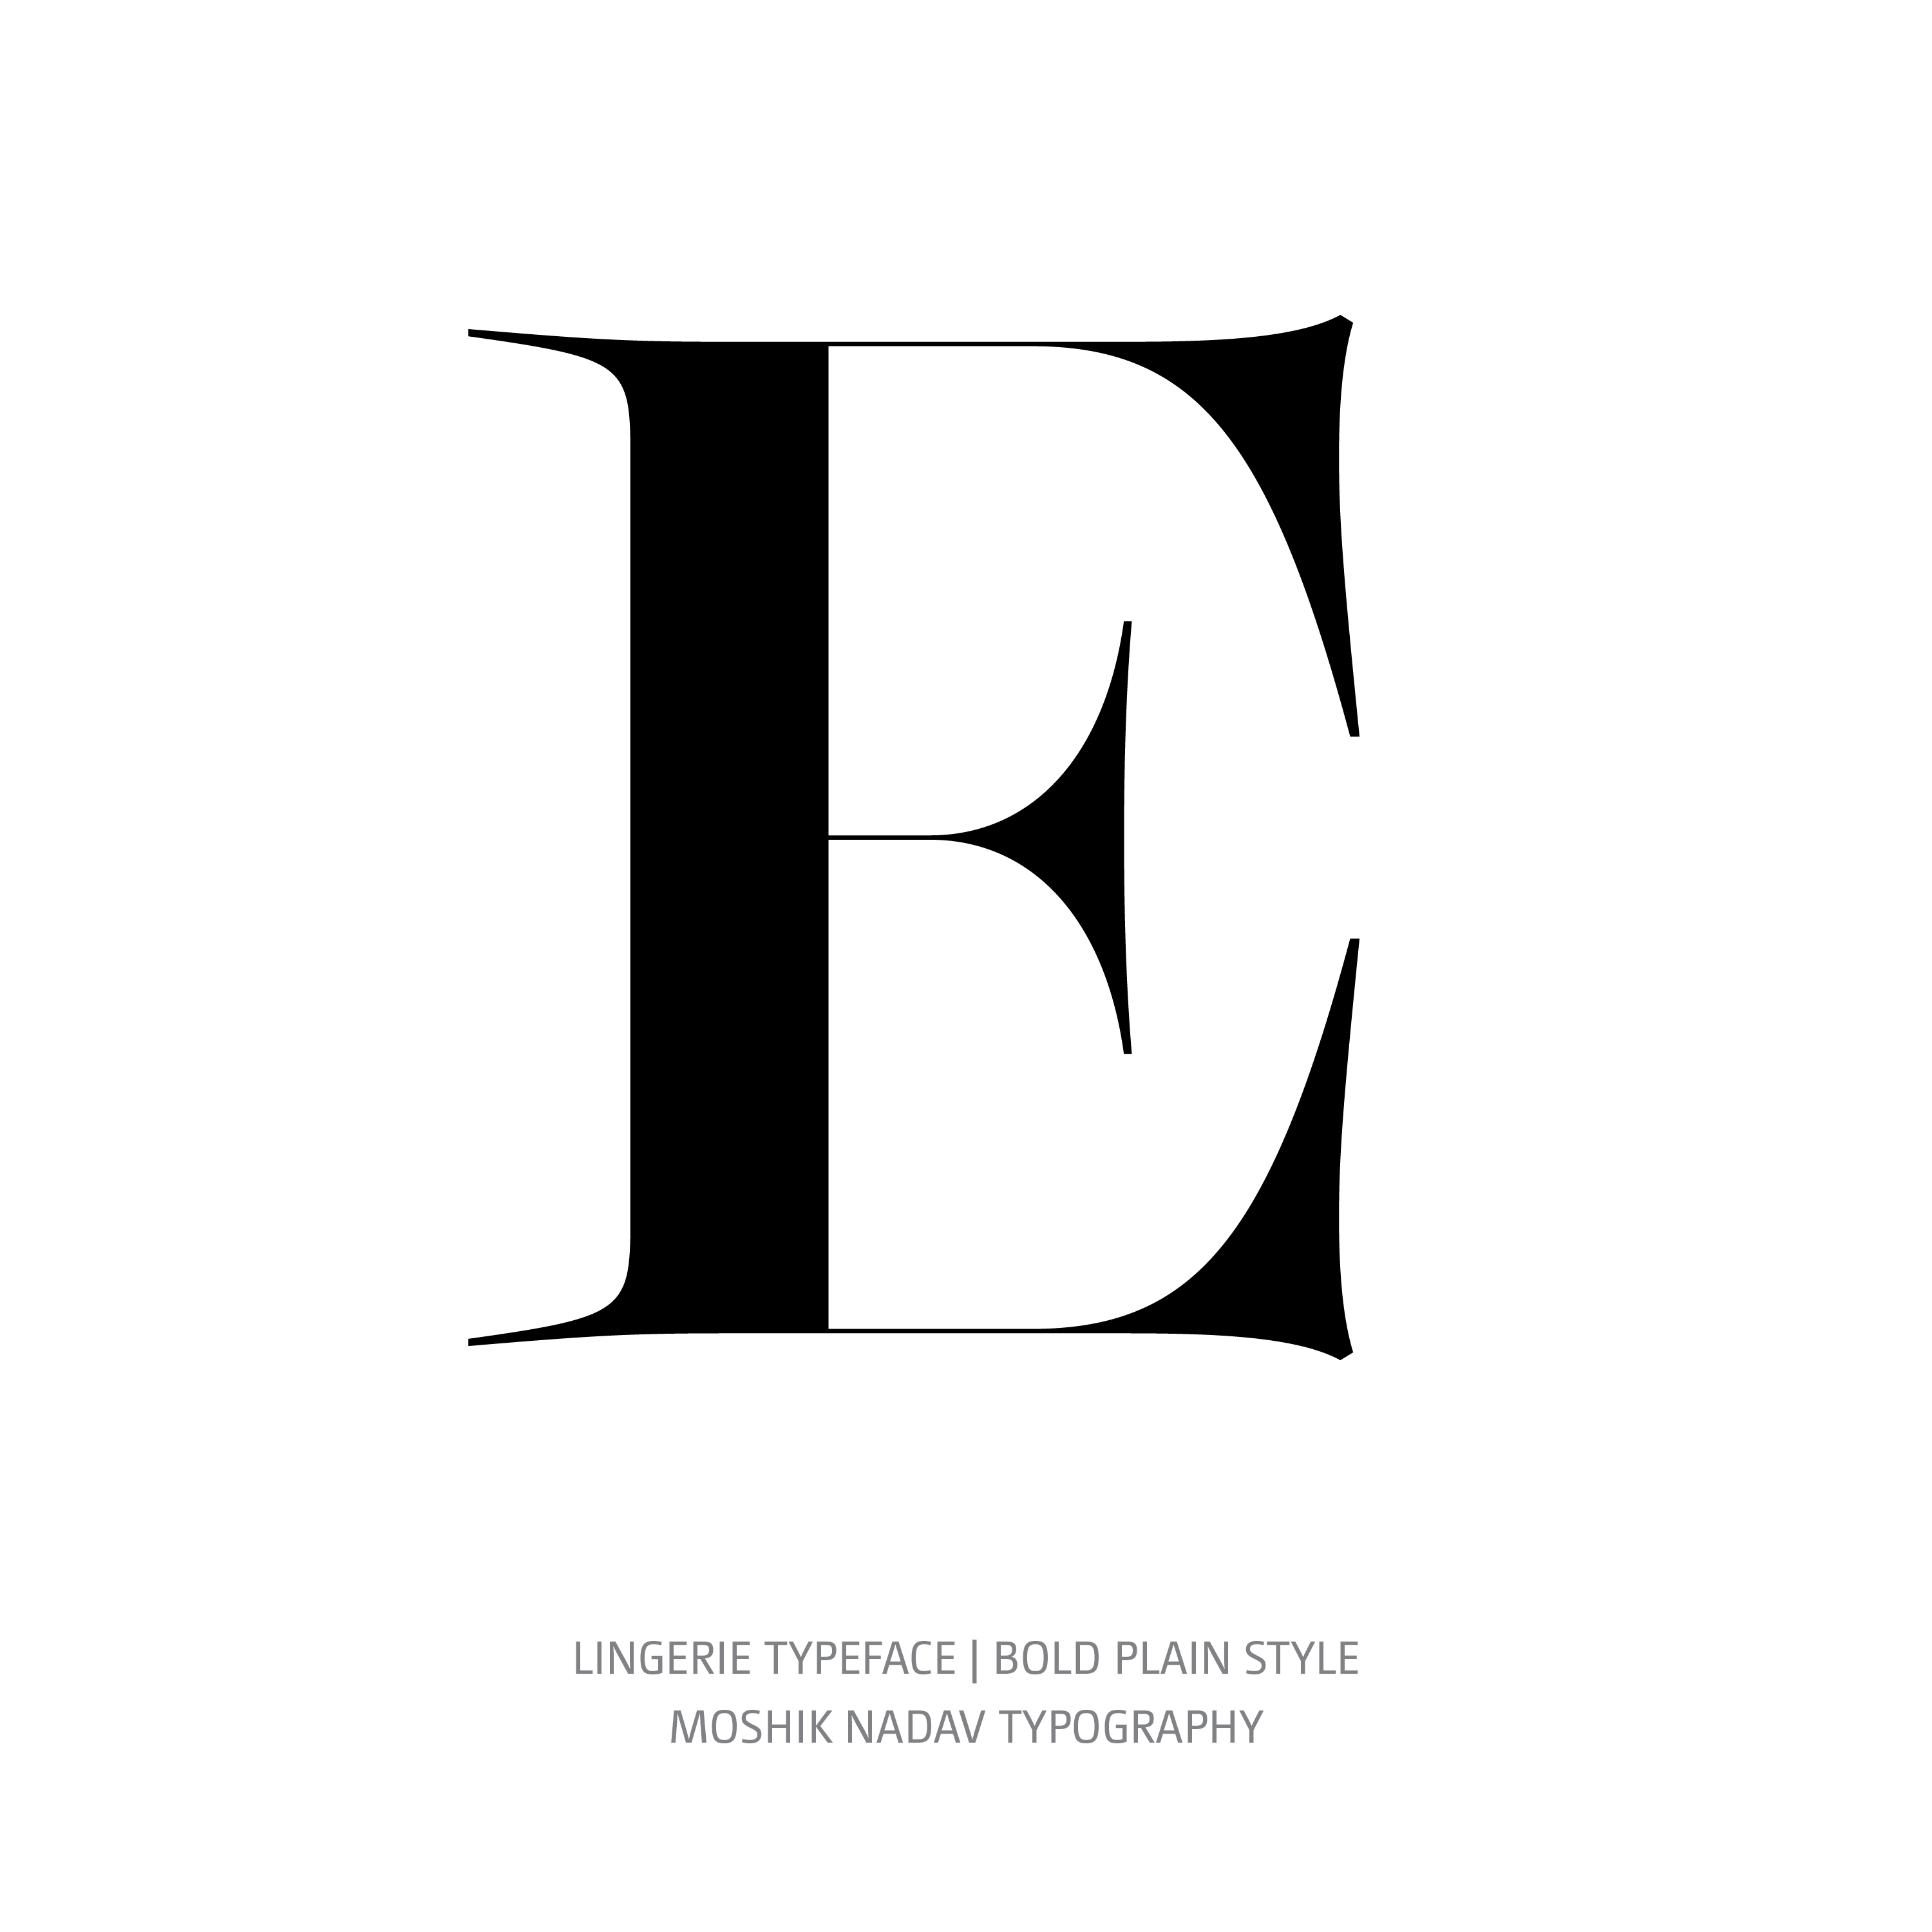 Lingerie Typeface Bold Plain E